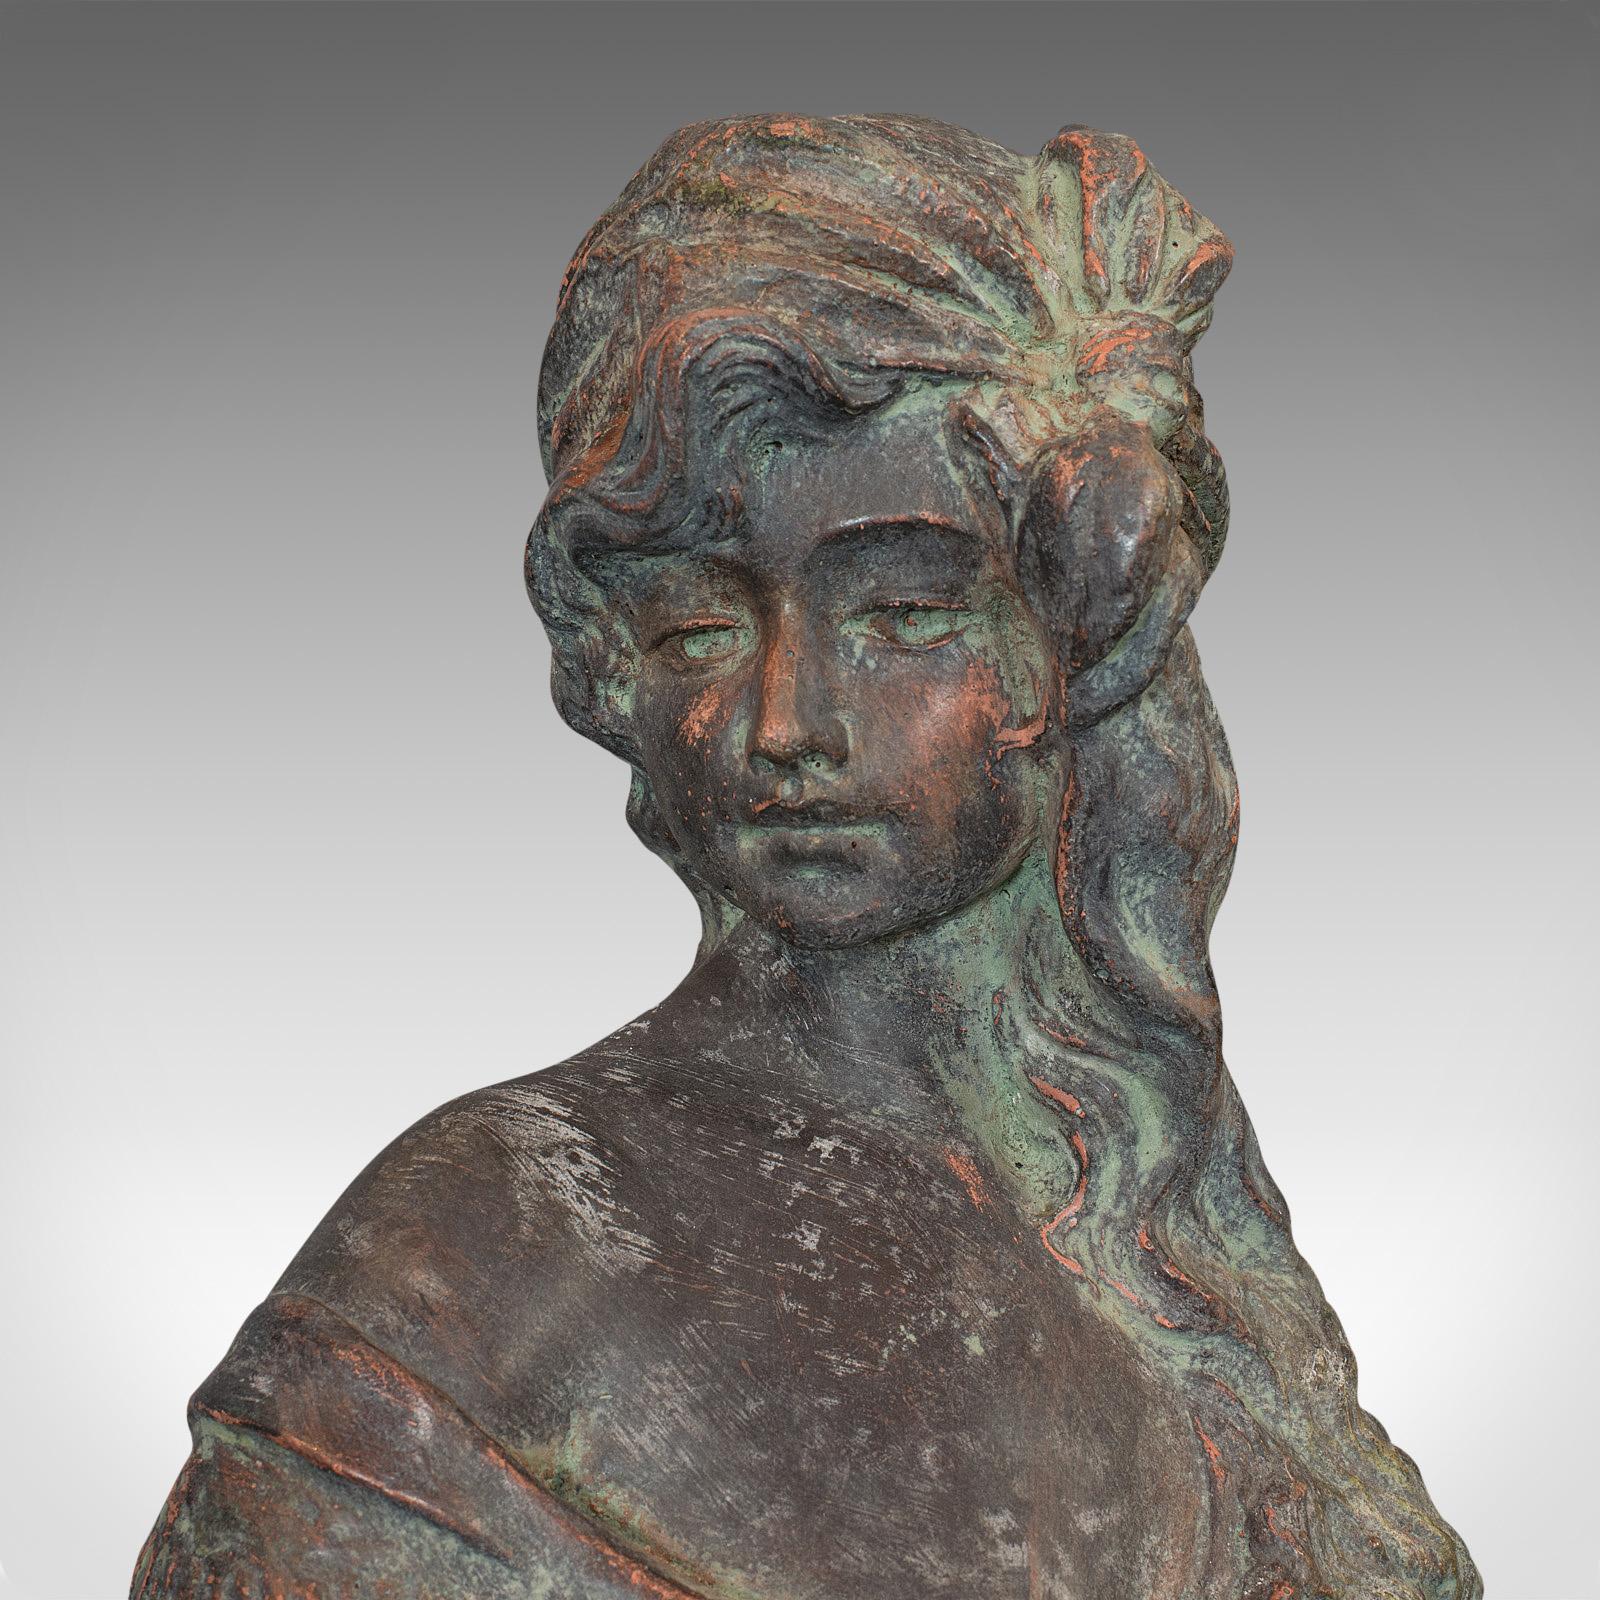 Vintage Female Bust, French, Bronzed Stone, Portrait, Statue, Art Nouveau Taste 1